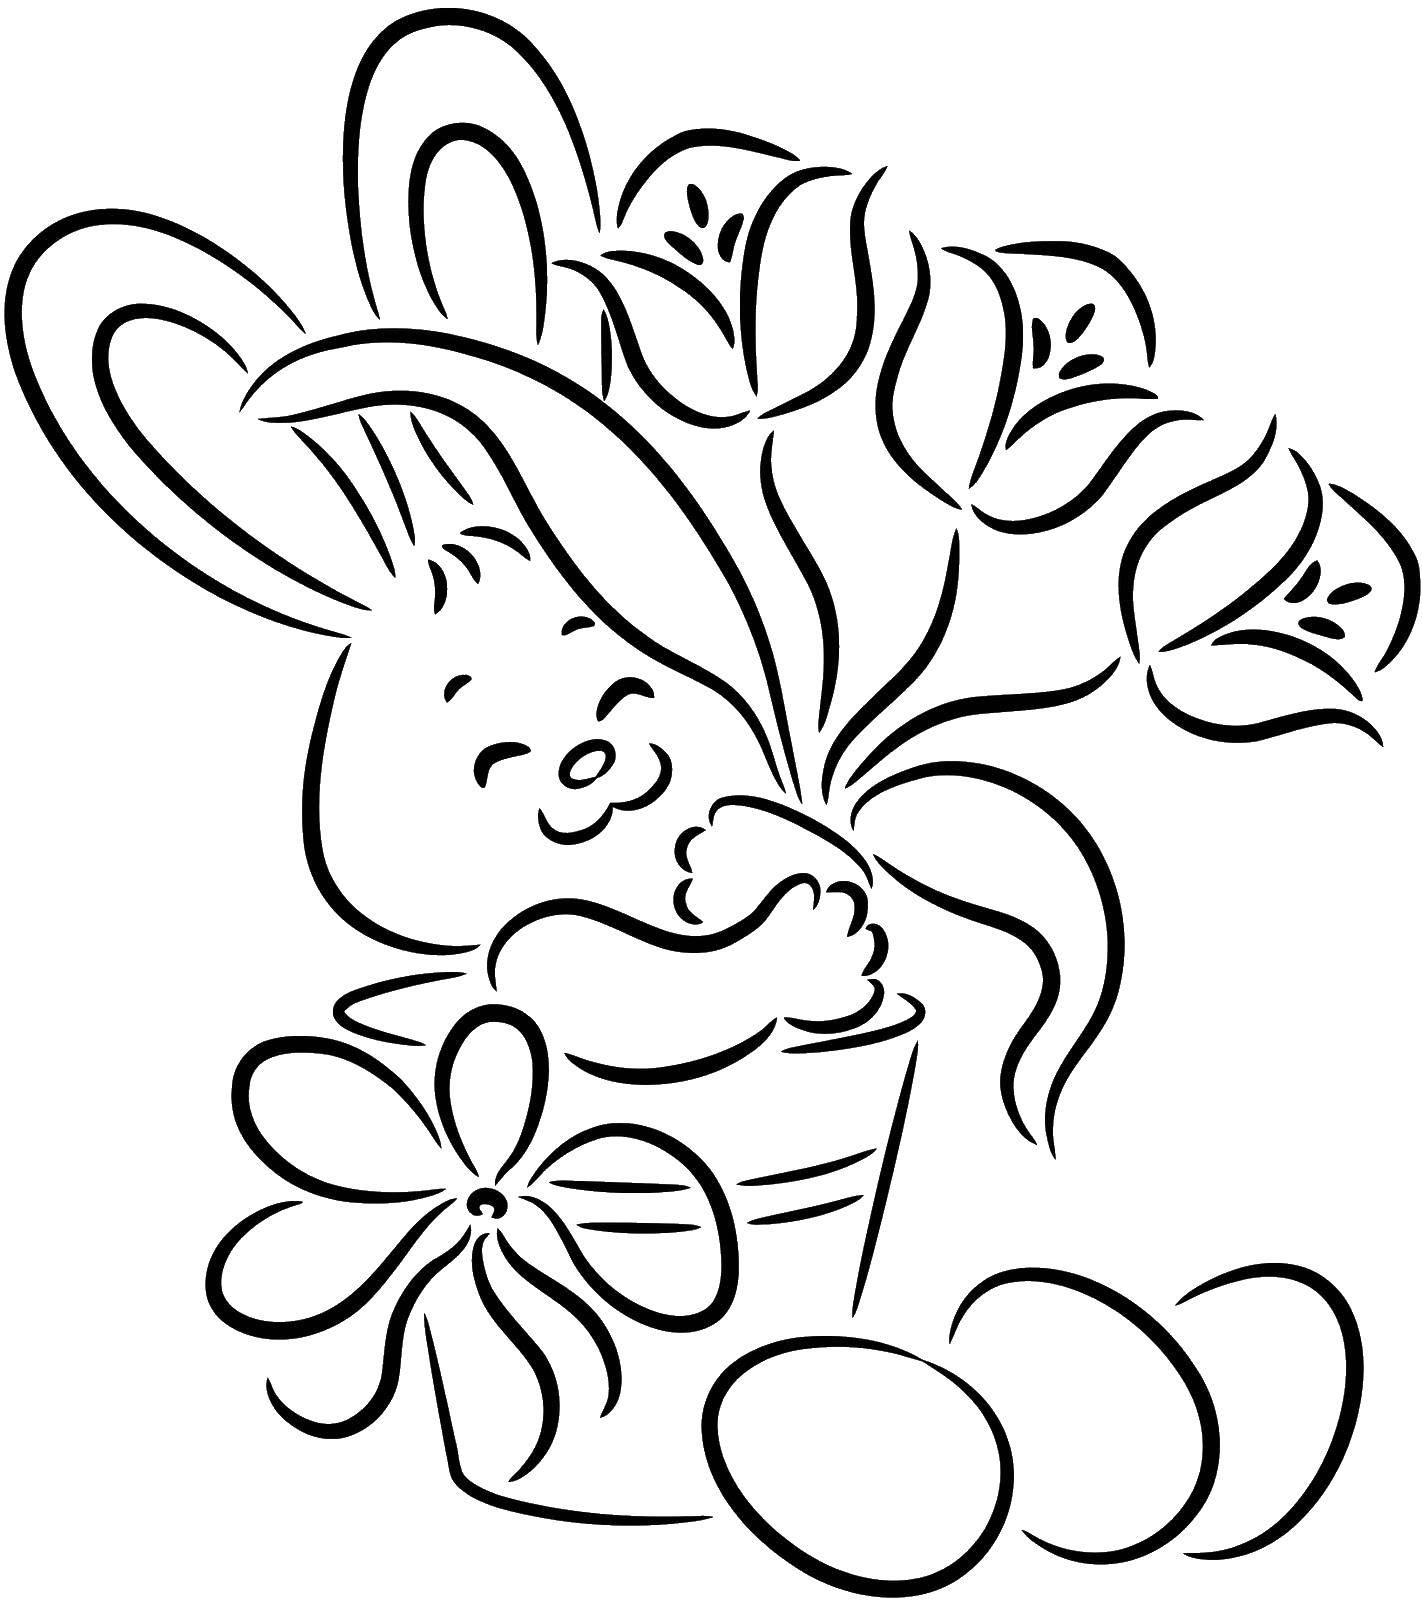 Название: Раскраска Заяц с цветами и яйцами. Категория: пасха. Теги: Пасха, праздник, яйца, кролик.